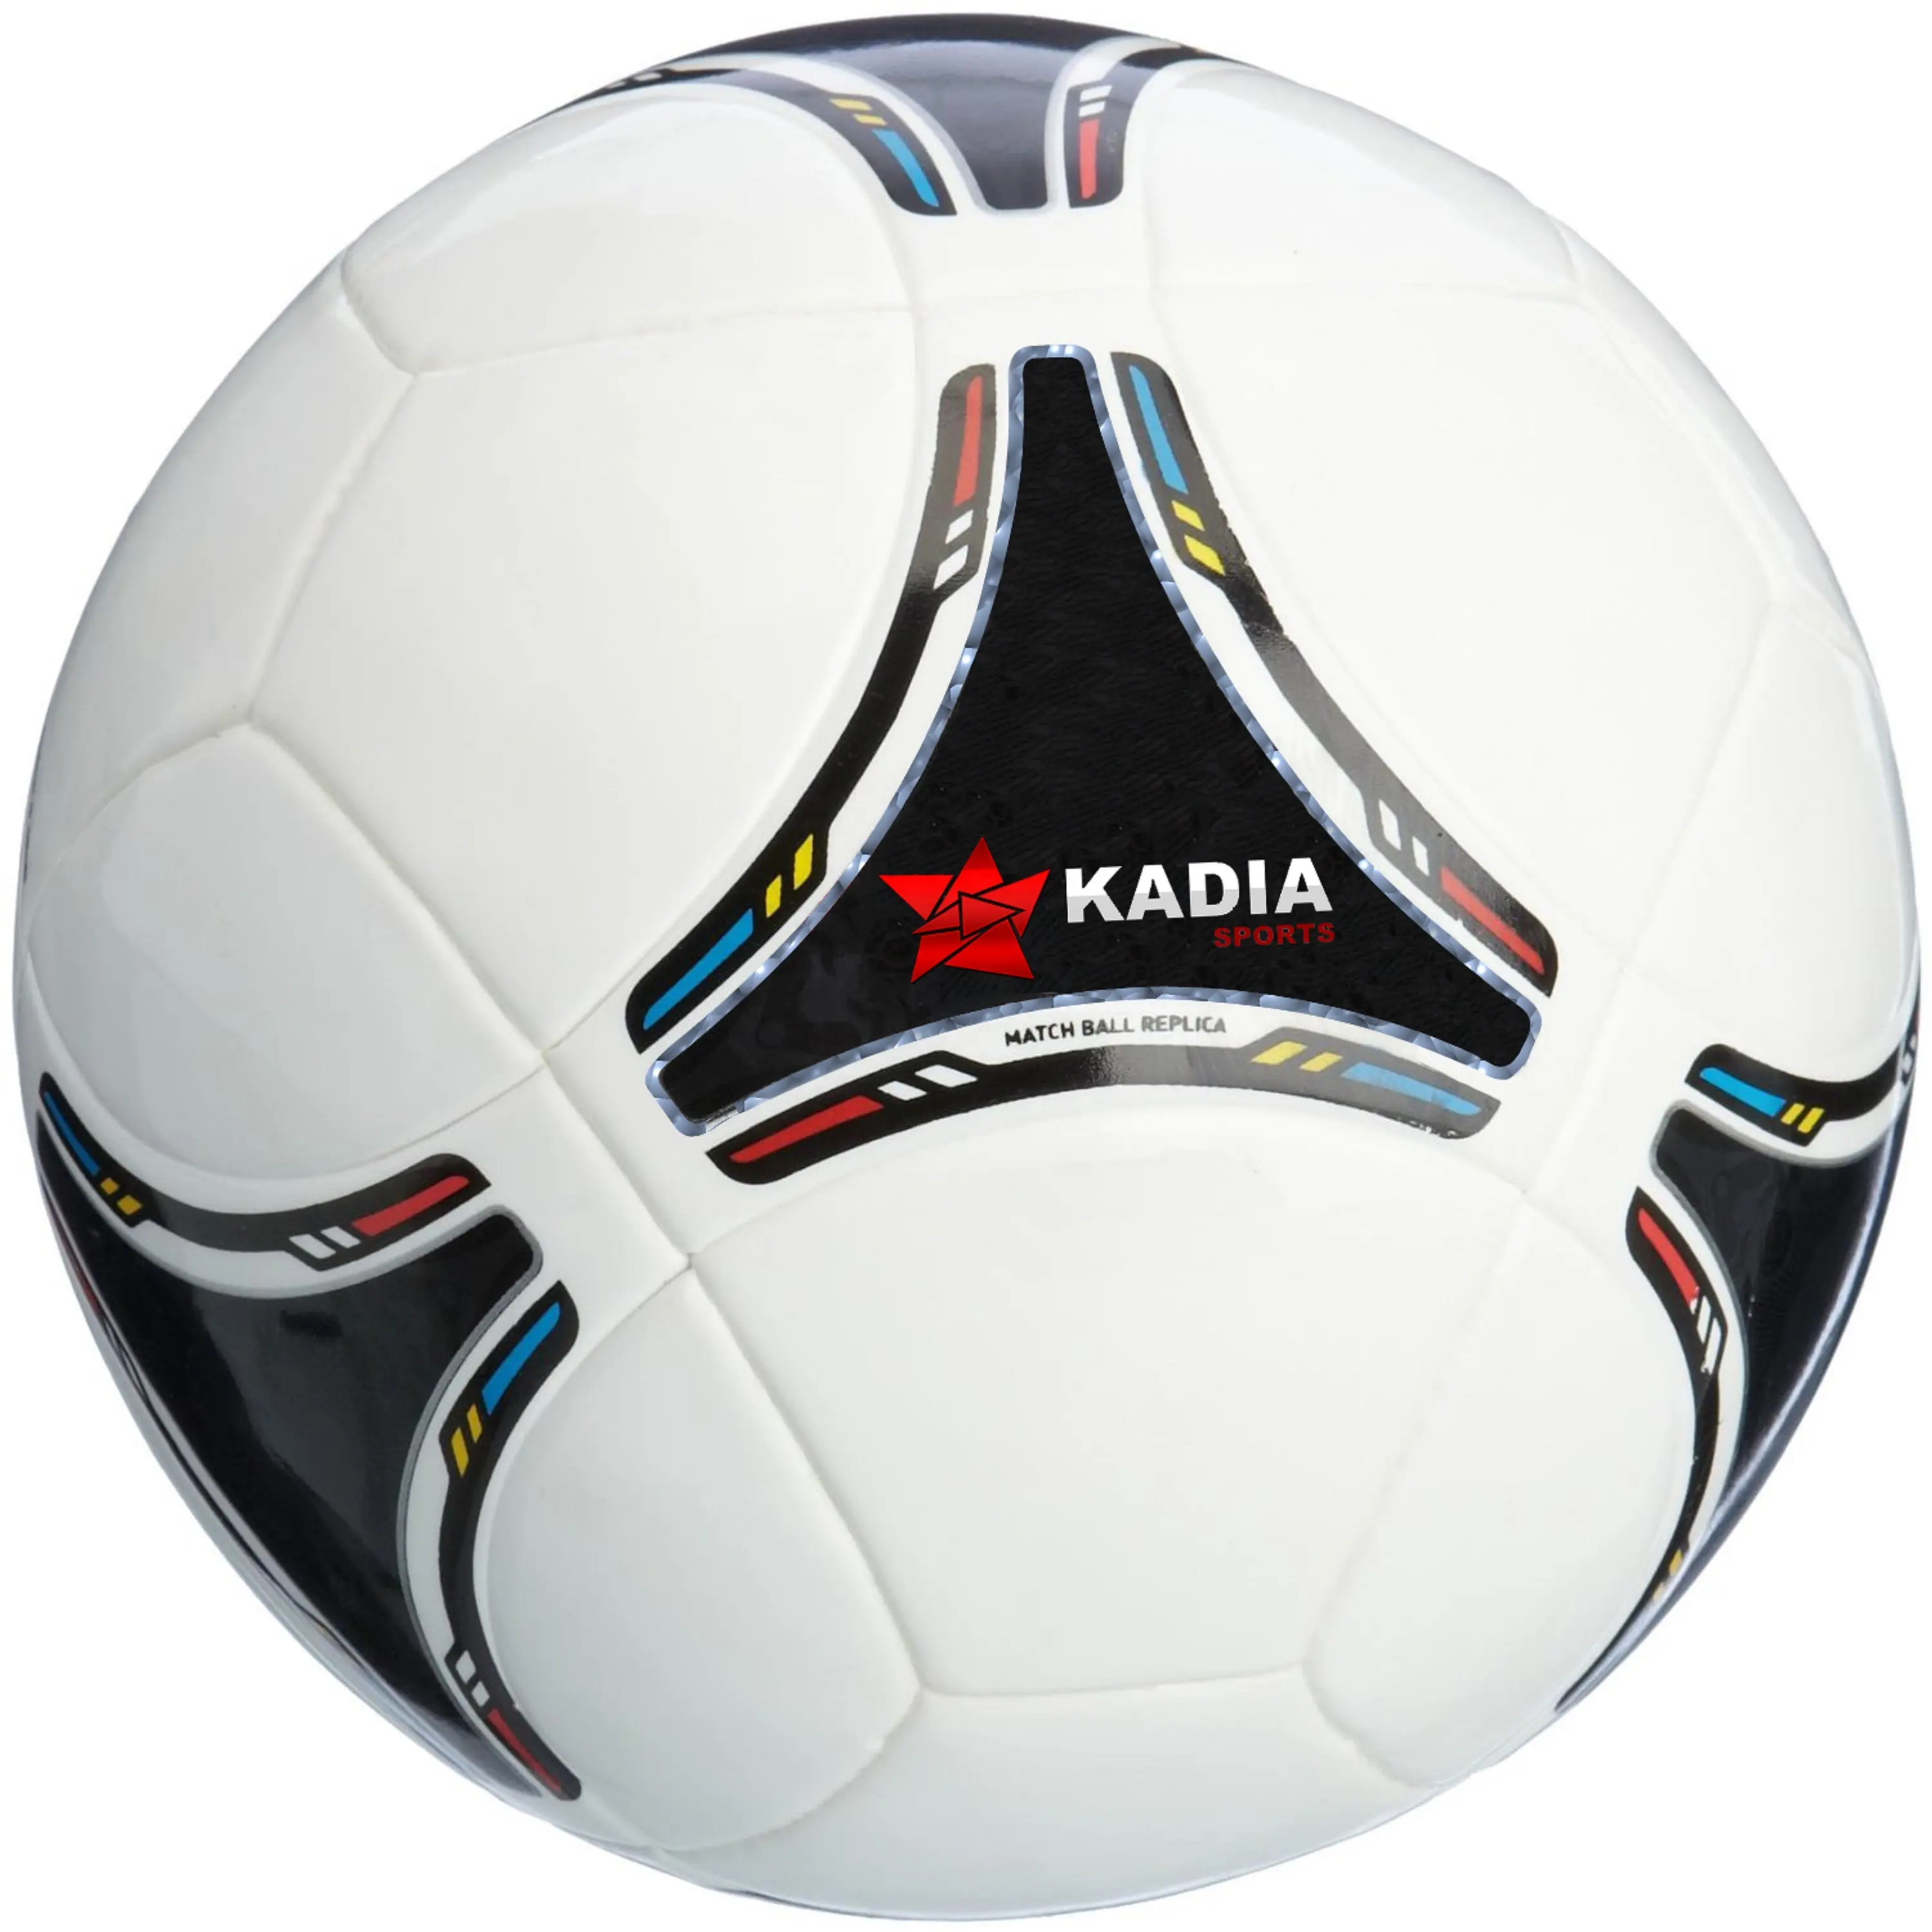 Star Size 4 5 bolas de futebol Adultos Juventude Dragão Padrão Match Training Bolas De Futebol Ao ar livre Indoor Football Free Gifts